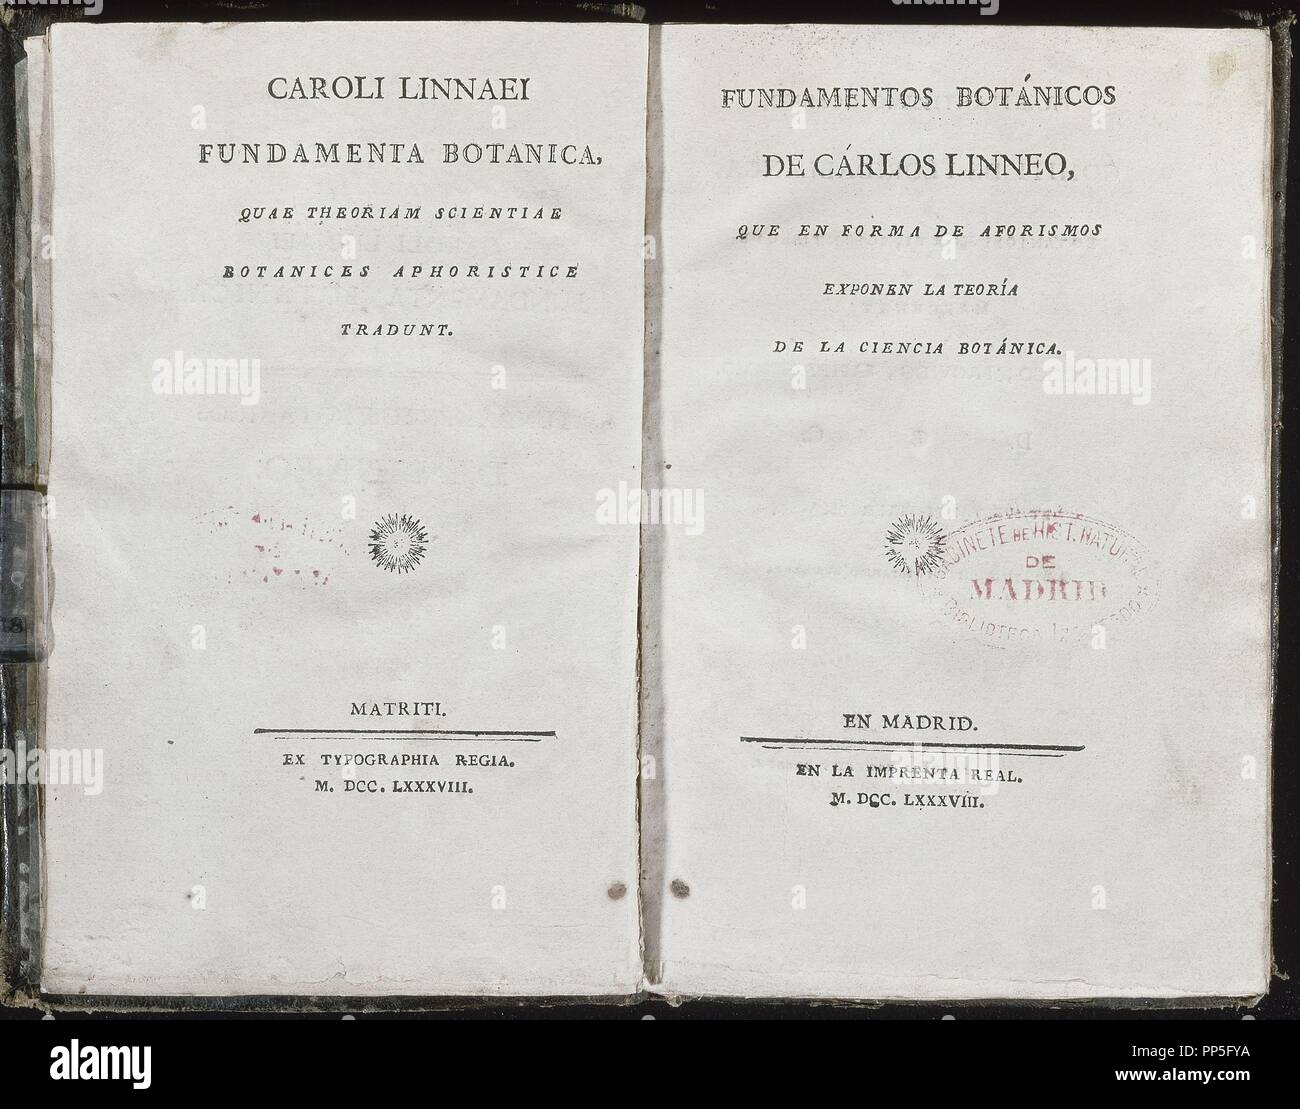 THEORY OF BOTANICAL SCIENCE - 1788. Author: LINNEO CARLOS. Location: JARDIN BOTANICO-BIBLIOTECA. MADRID. SPAIN. Stock Photo